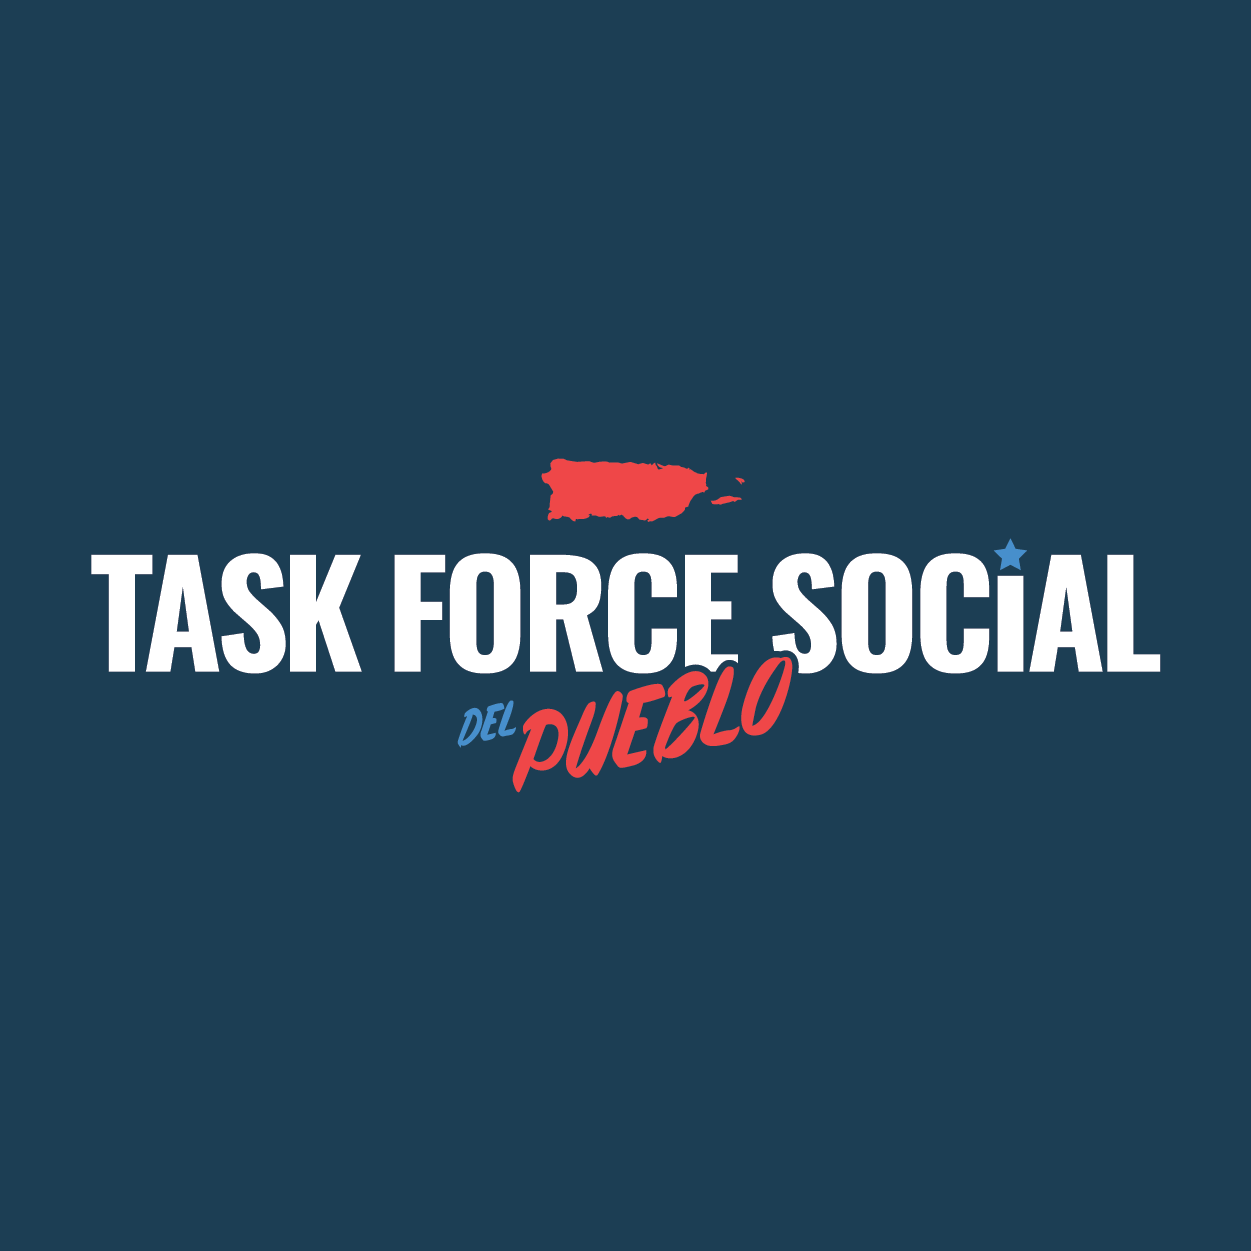 Taskforce Social del Pueblo